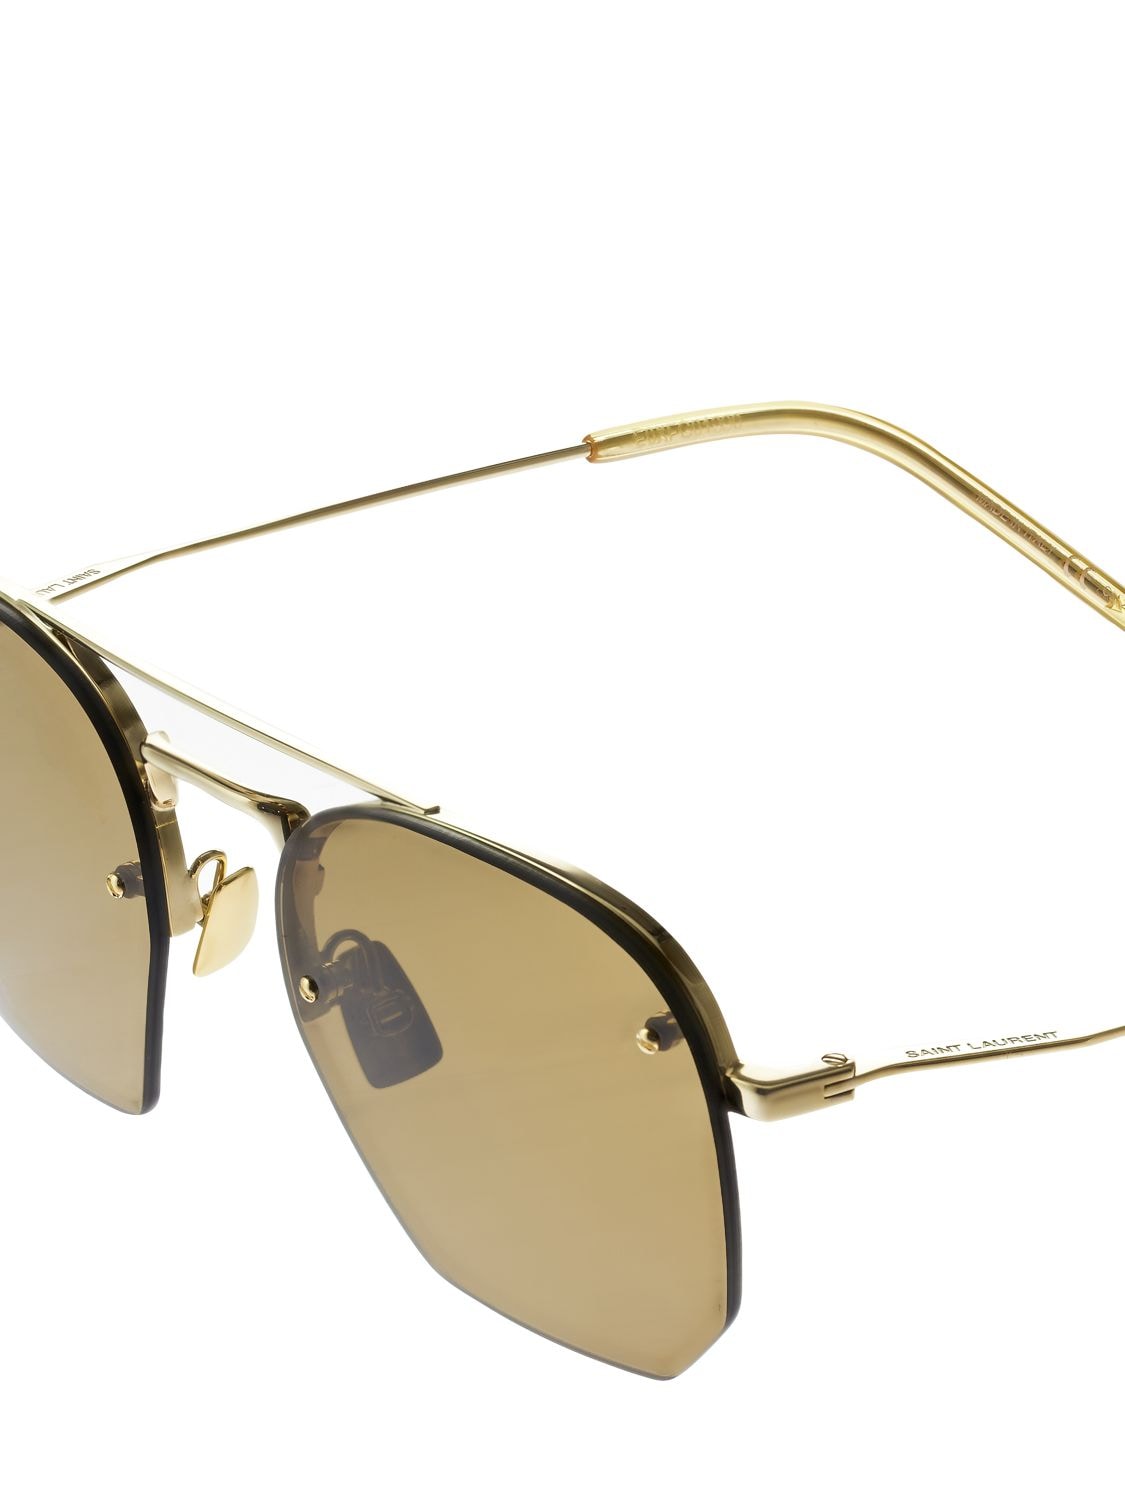 Saint Laurent Gold & Brown SL 422 Sunglasses